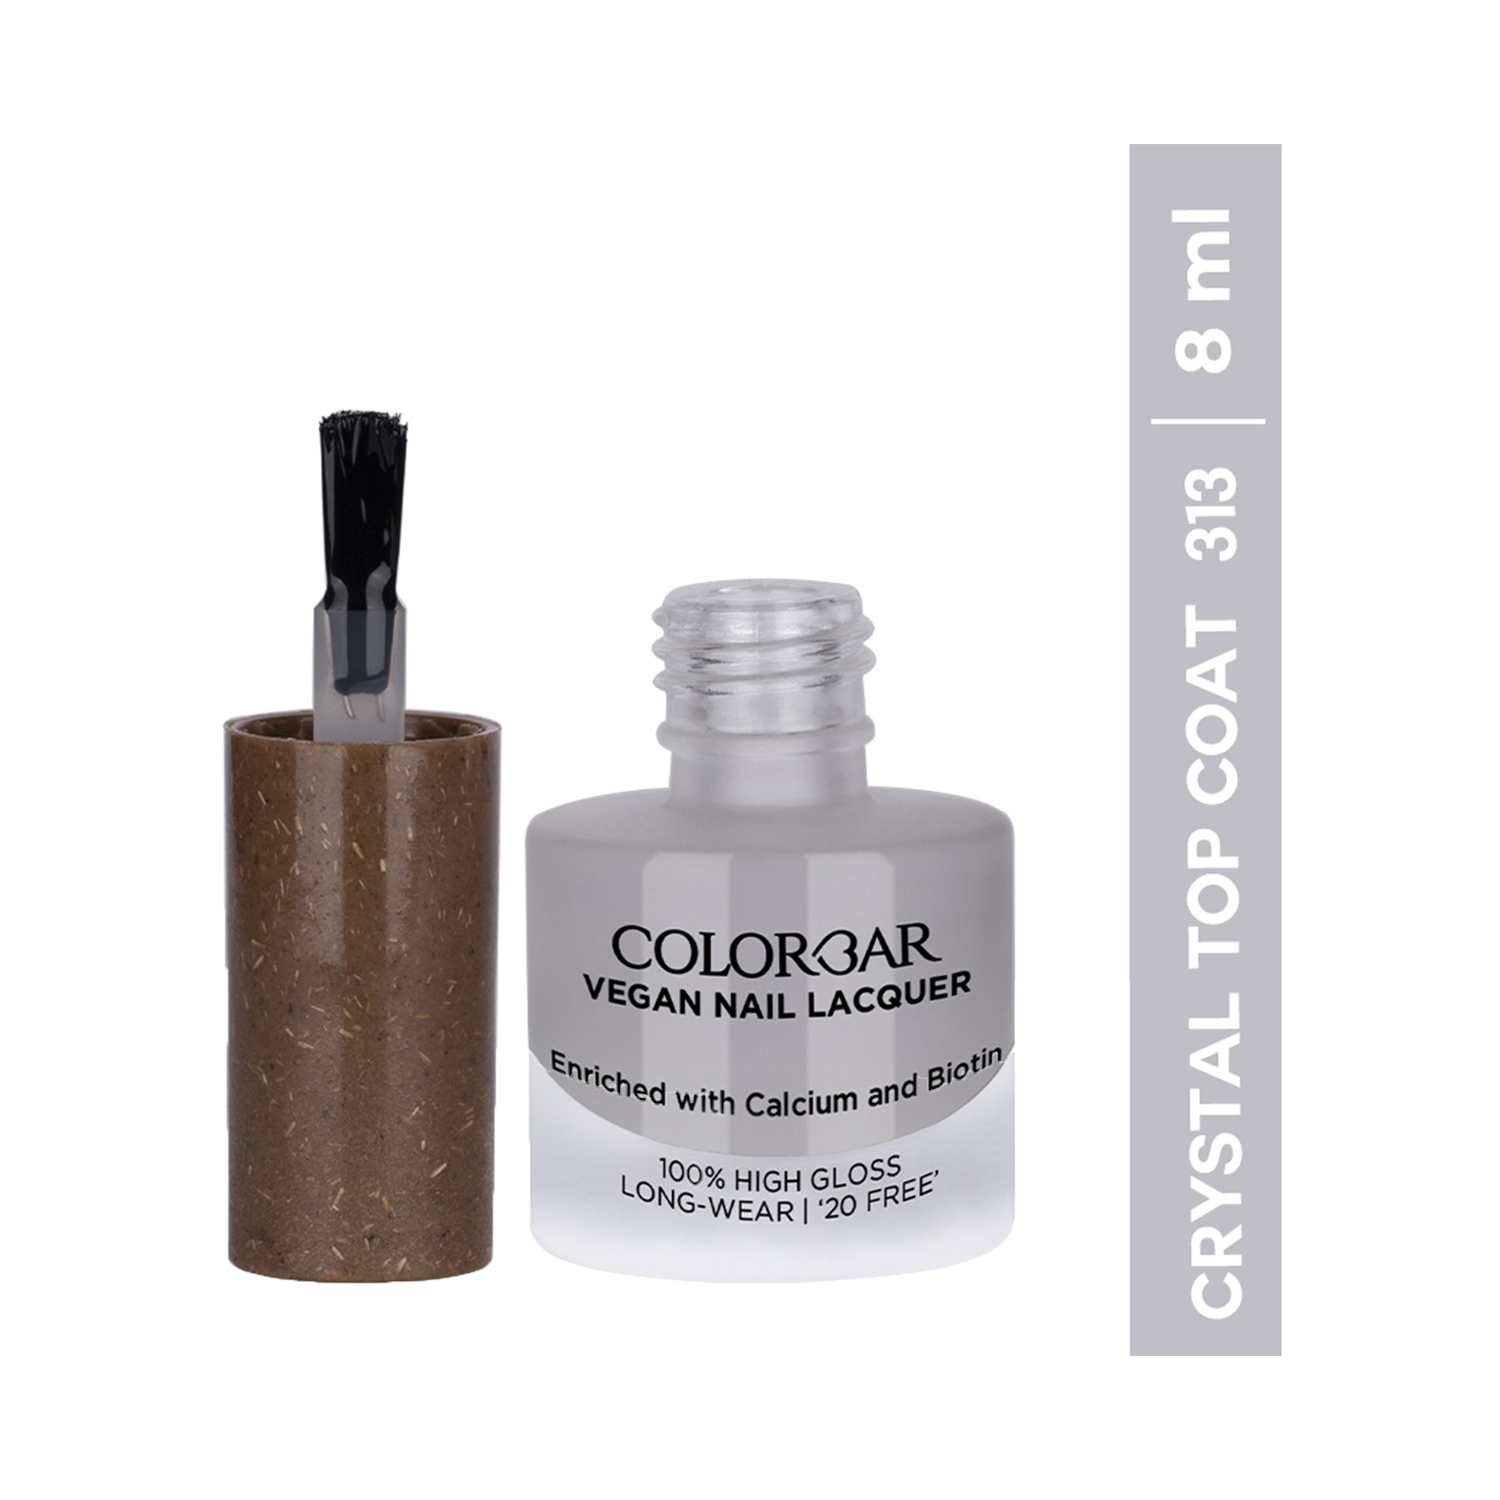 Colorbar | Colorbar Vegan Nail Lacquer - 313 Crystal Top Coat (8ml)